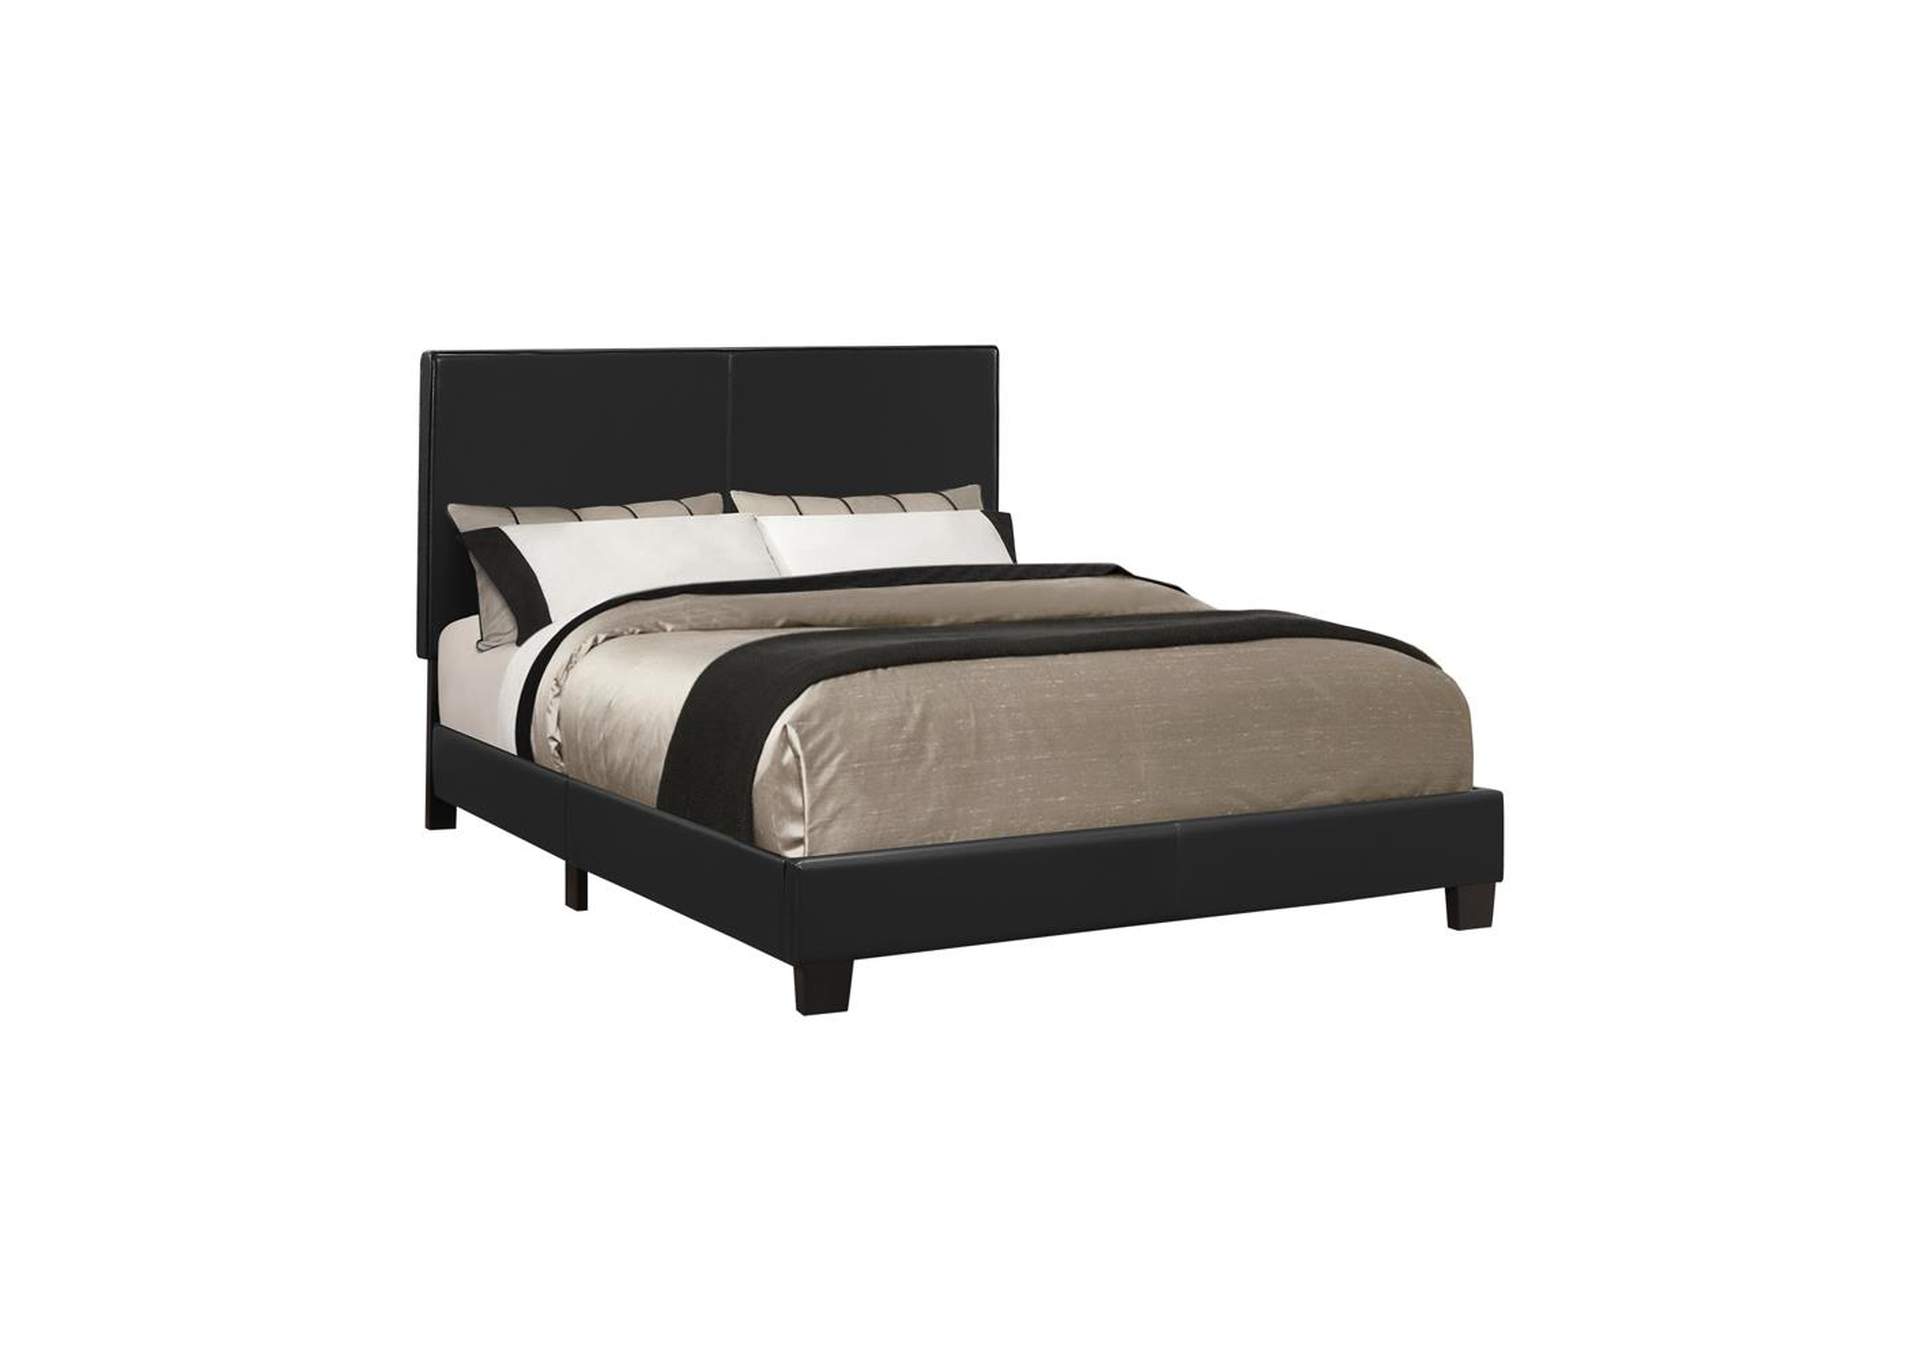 Muave Bed Upholstered Queen Black,Coaster Furniture